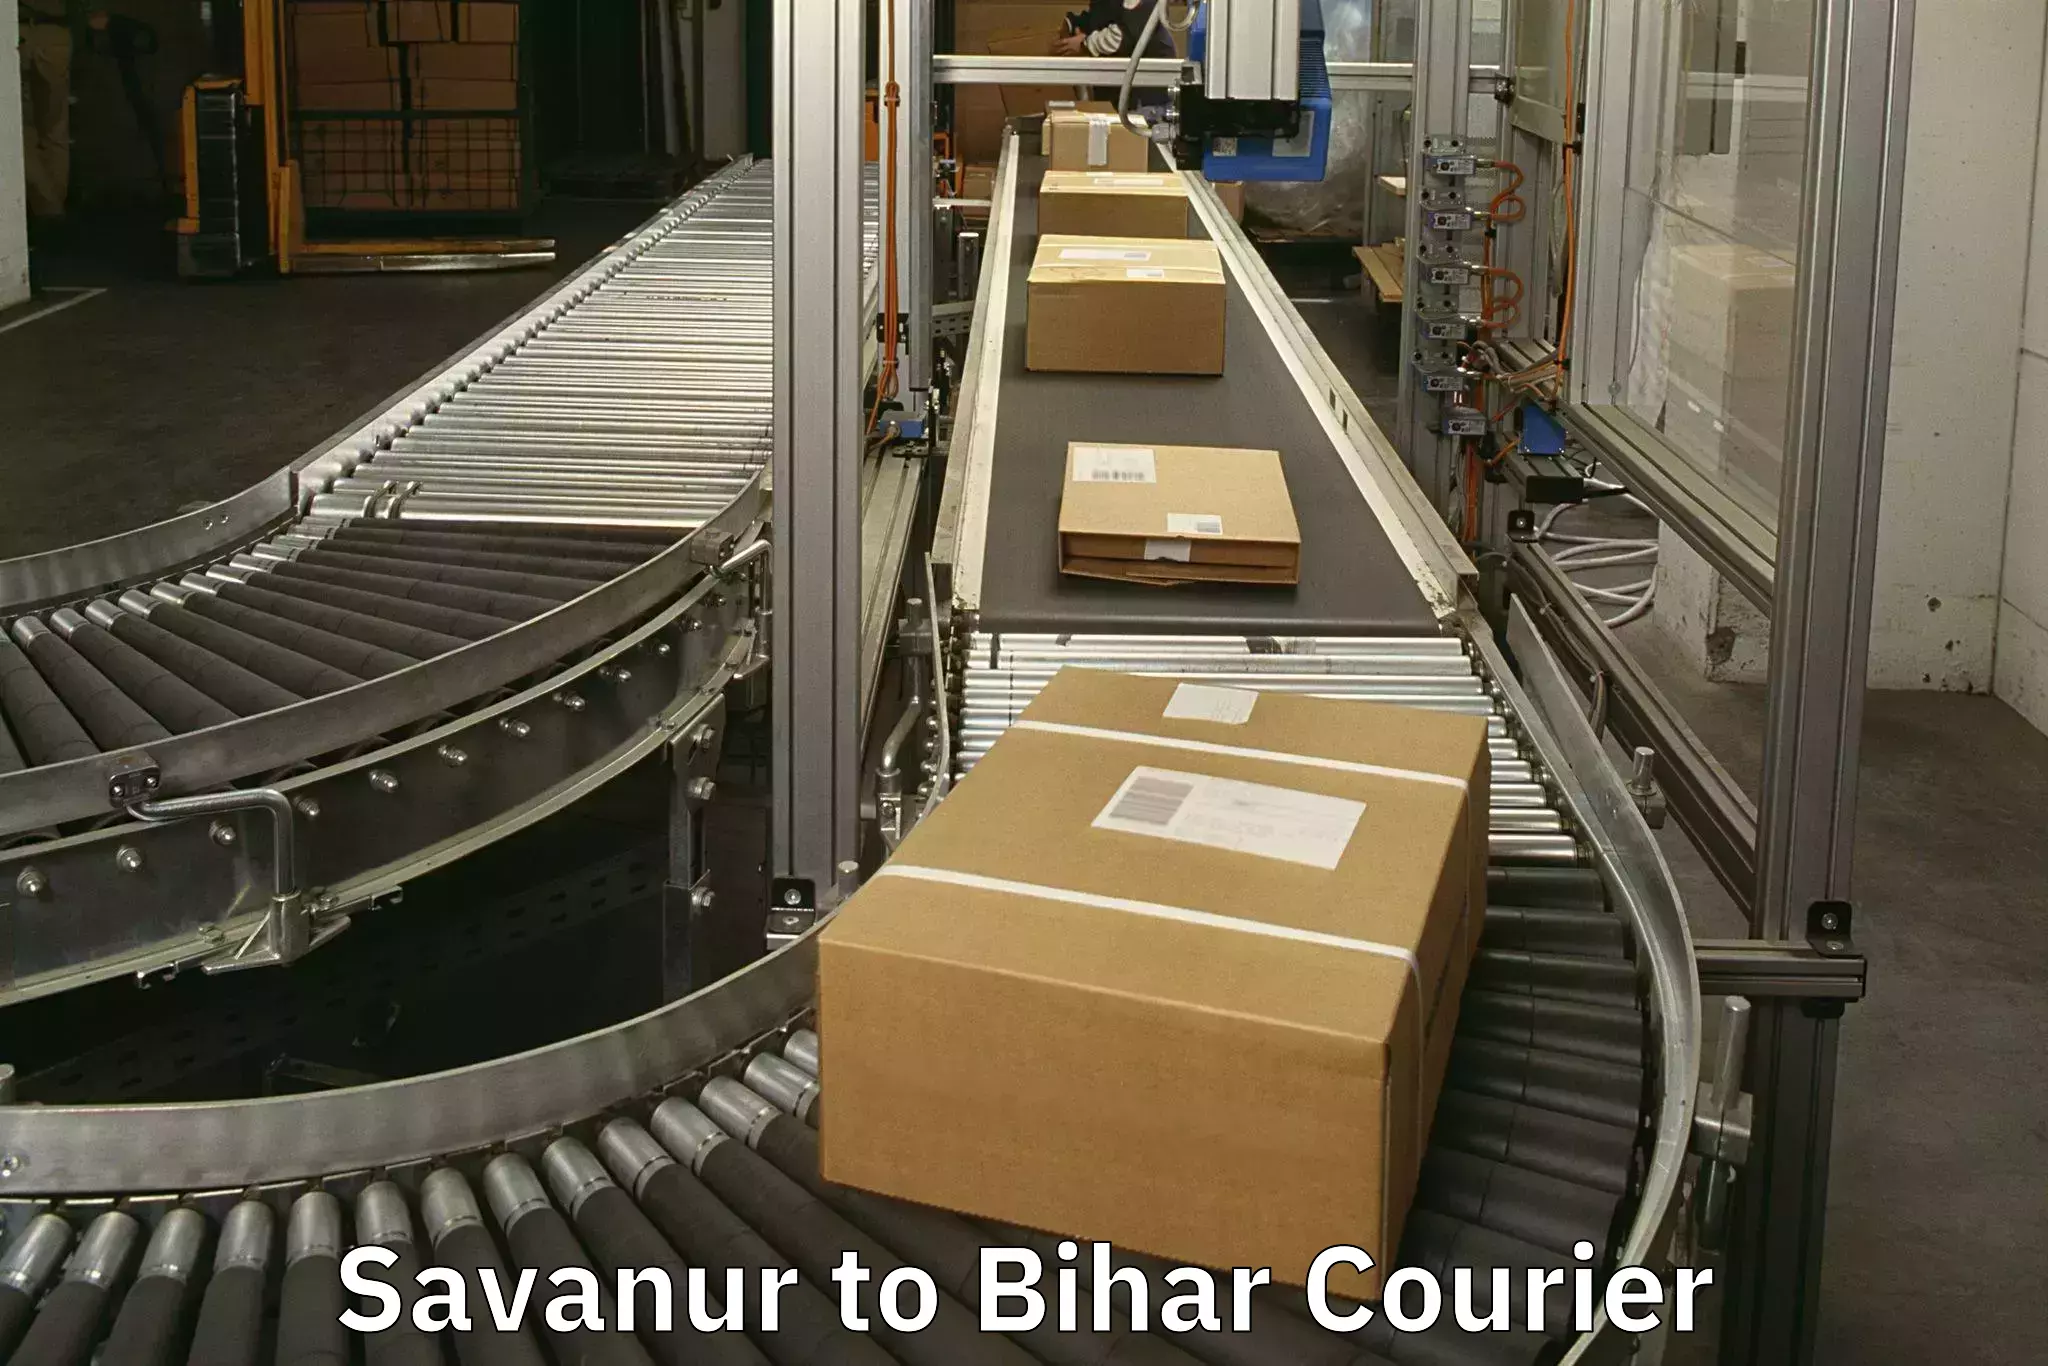 Baggage transport technology Savanur to Siwan